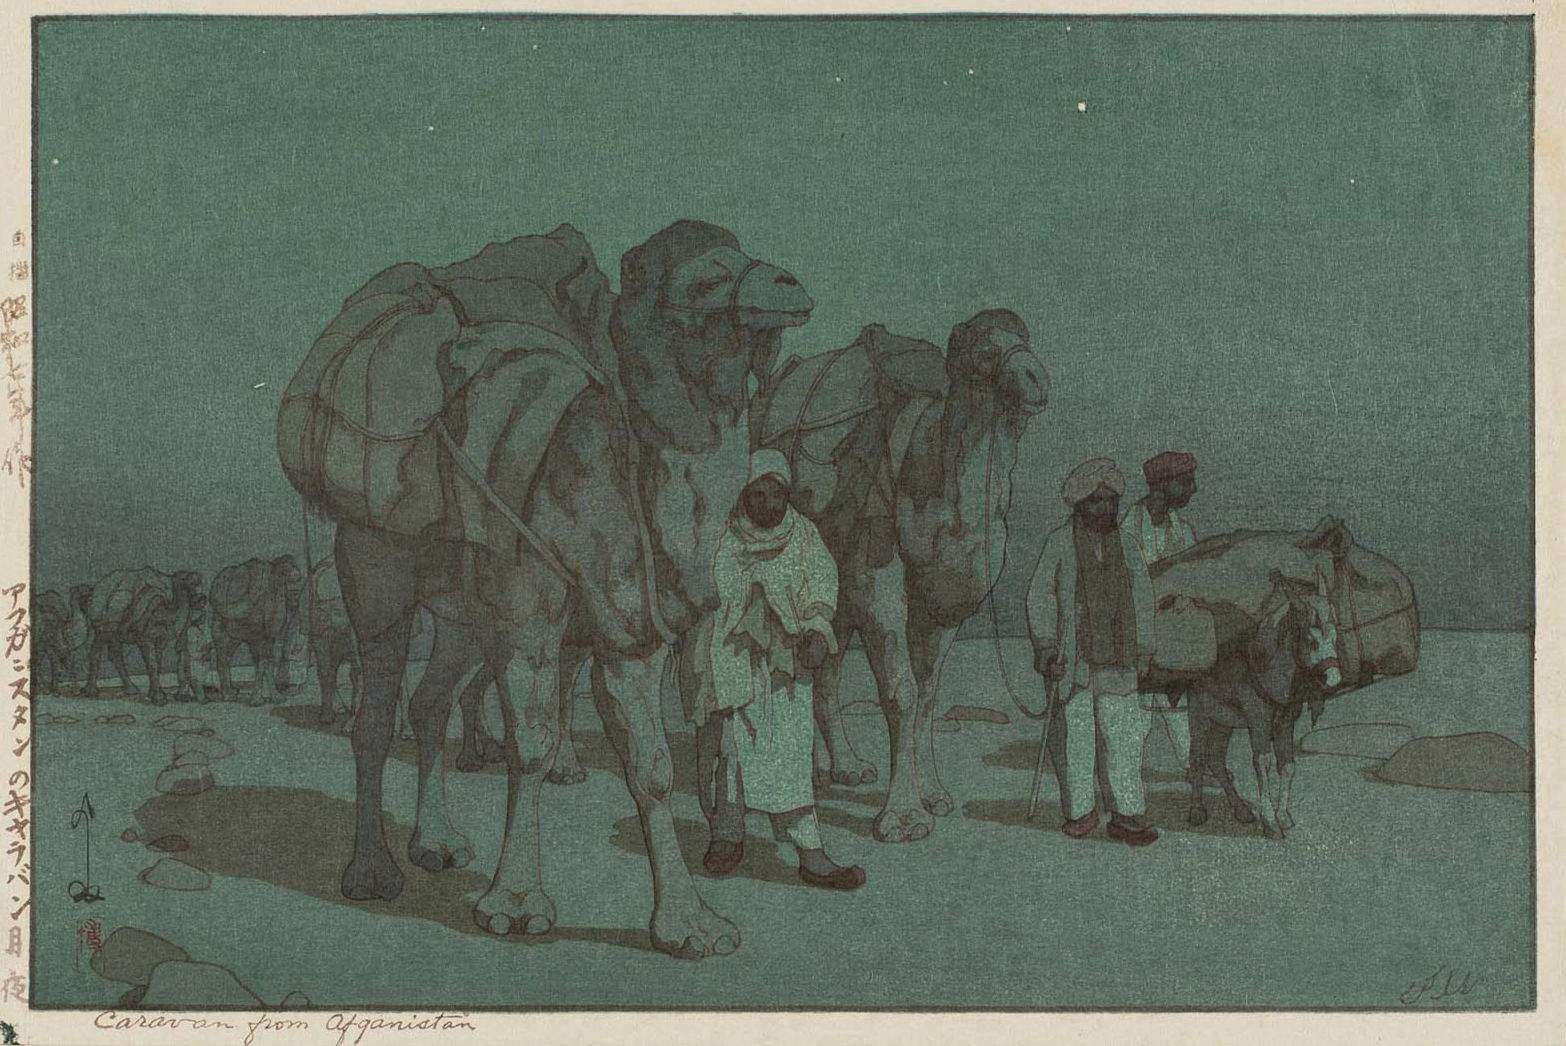 Caravan from Afghanistan [Moonlight] woodblock print